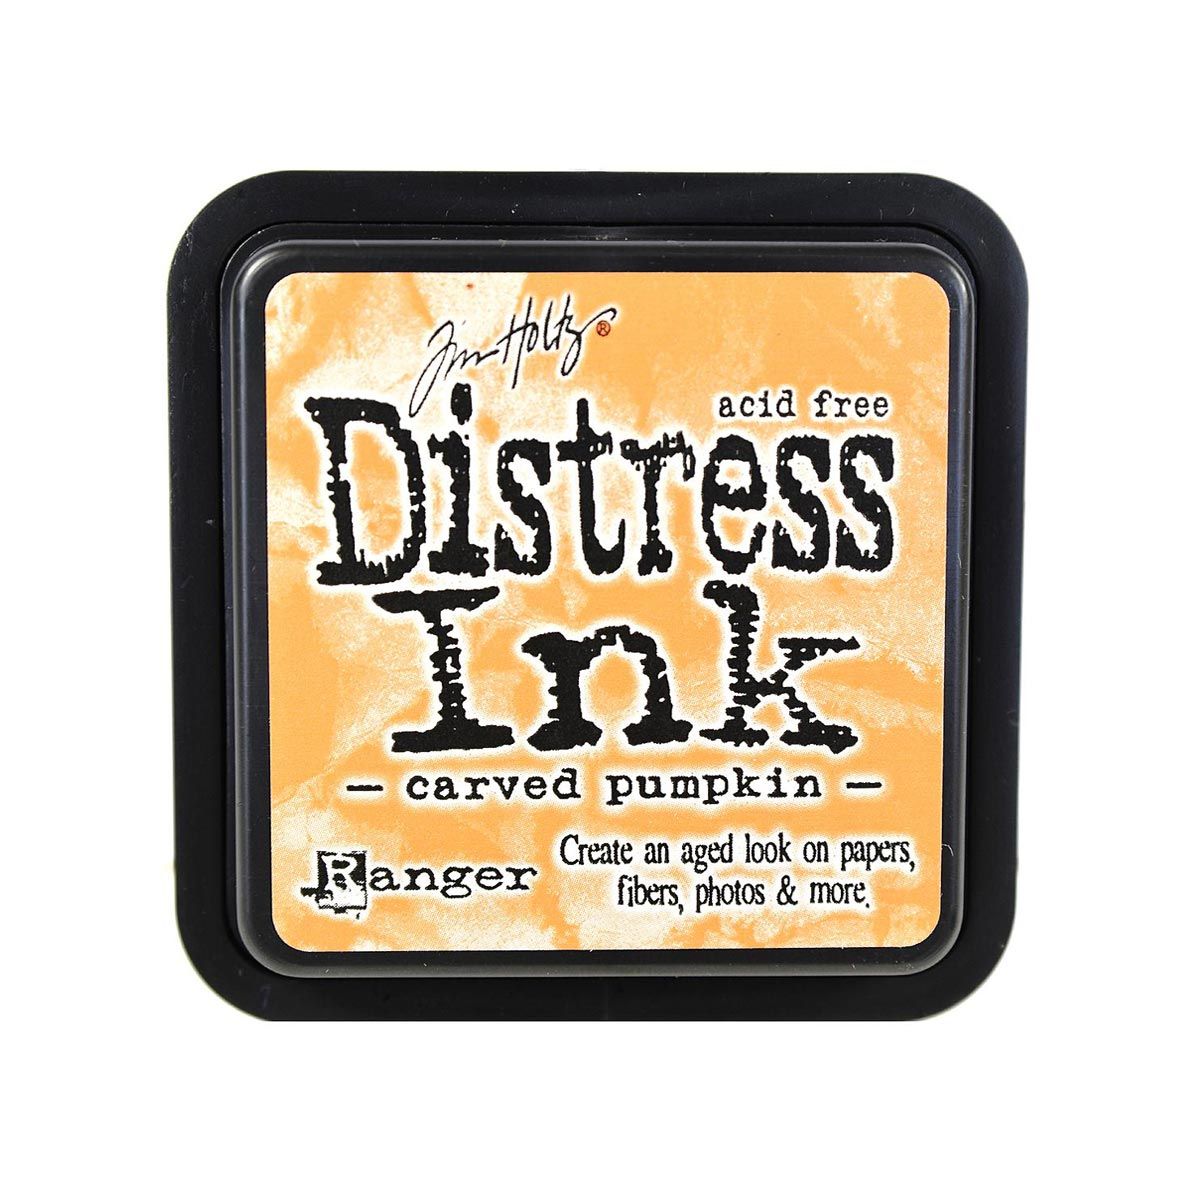 Tim Holtz Mini Distress Ink Pad Carved Pumpkin 1x1 inch